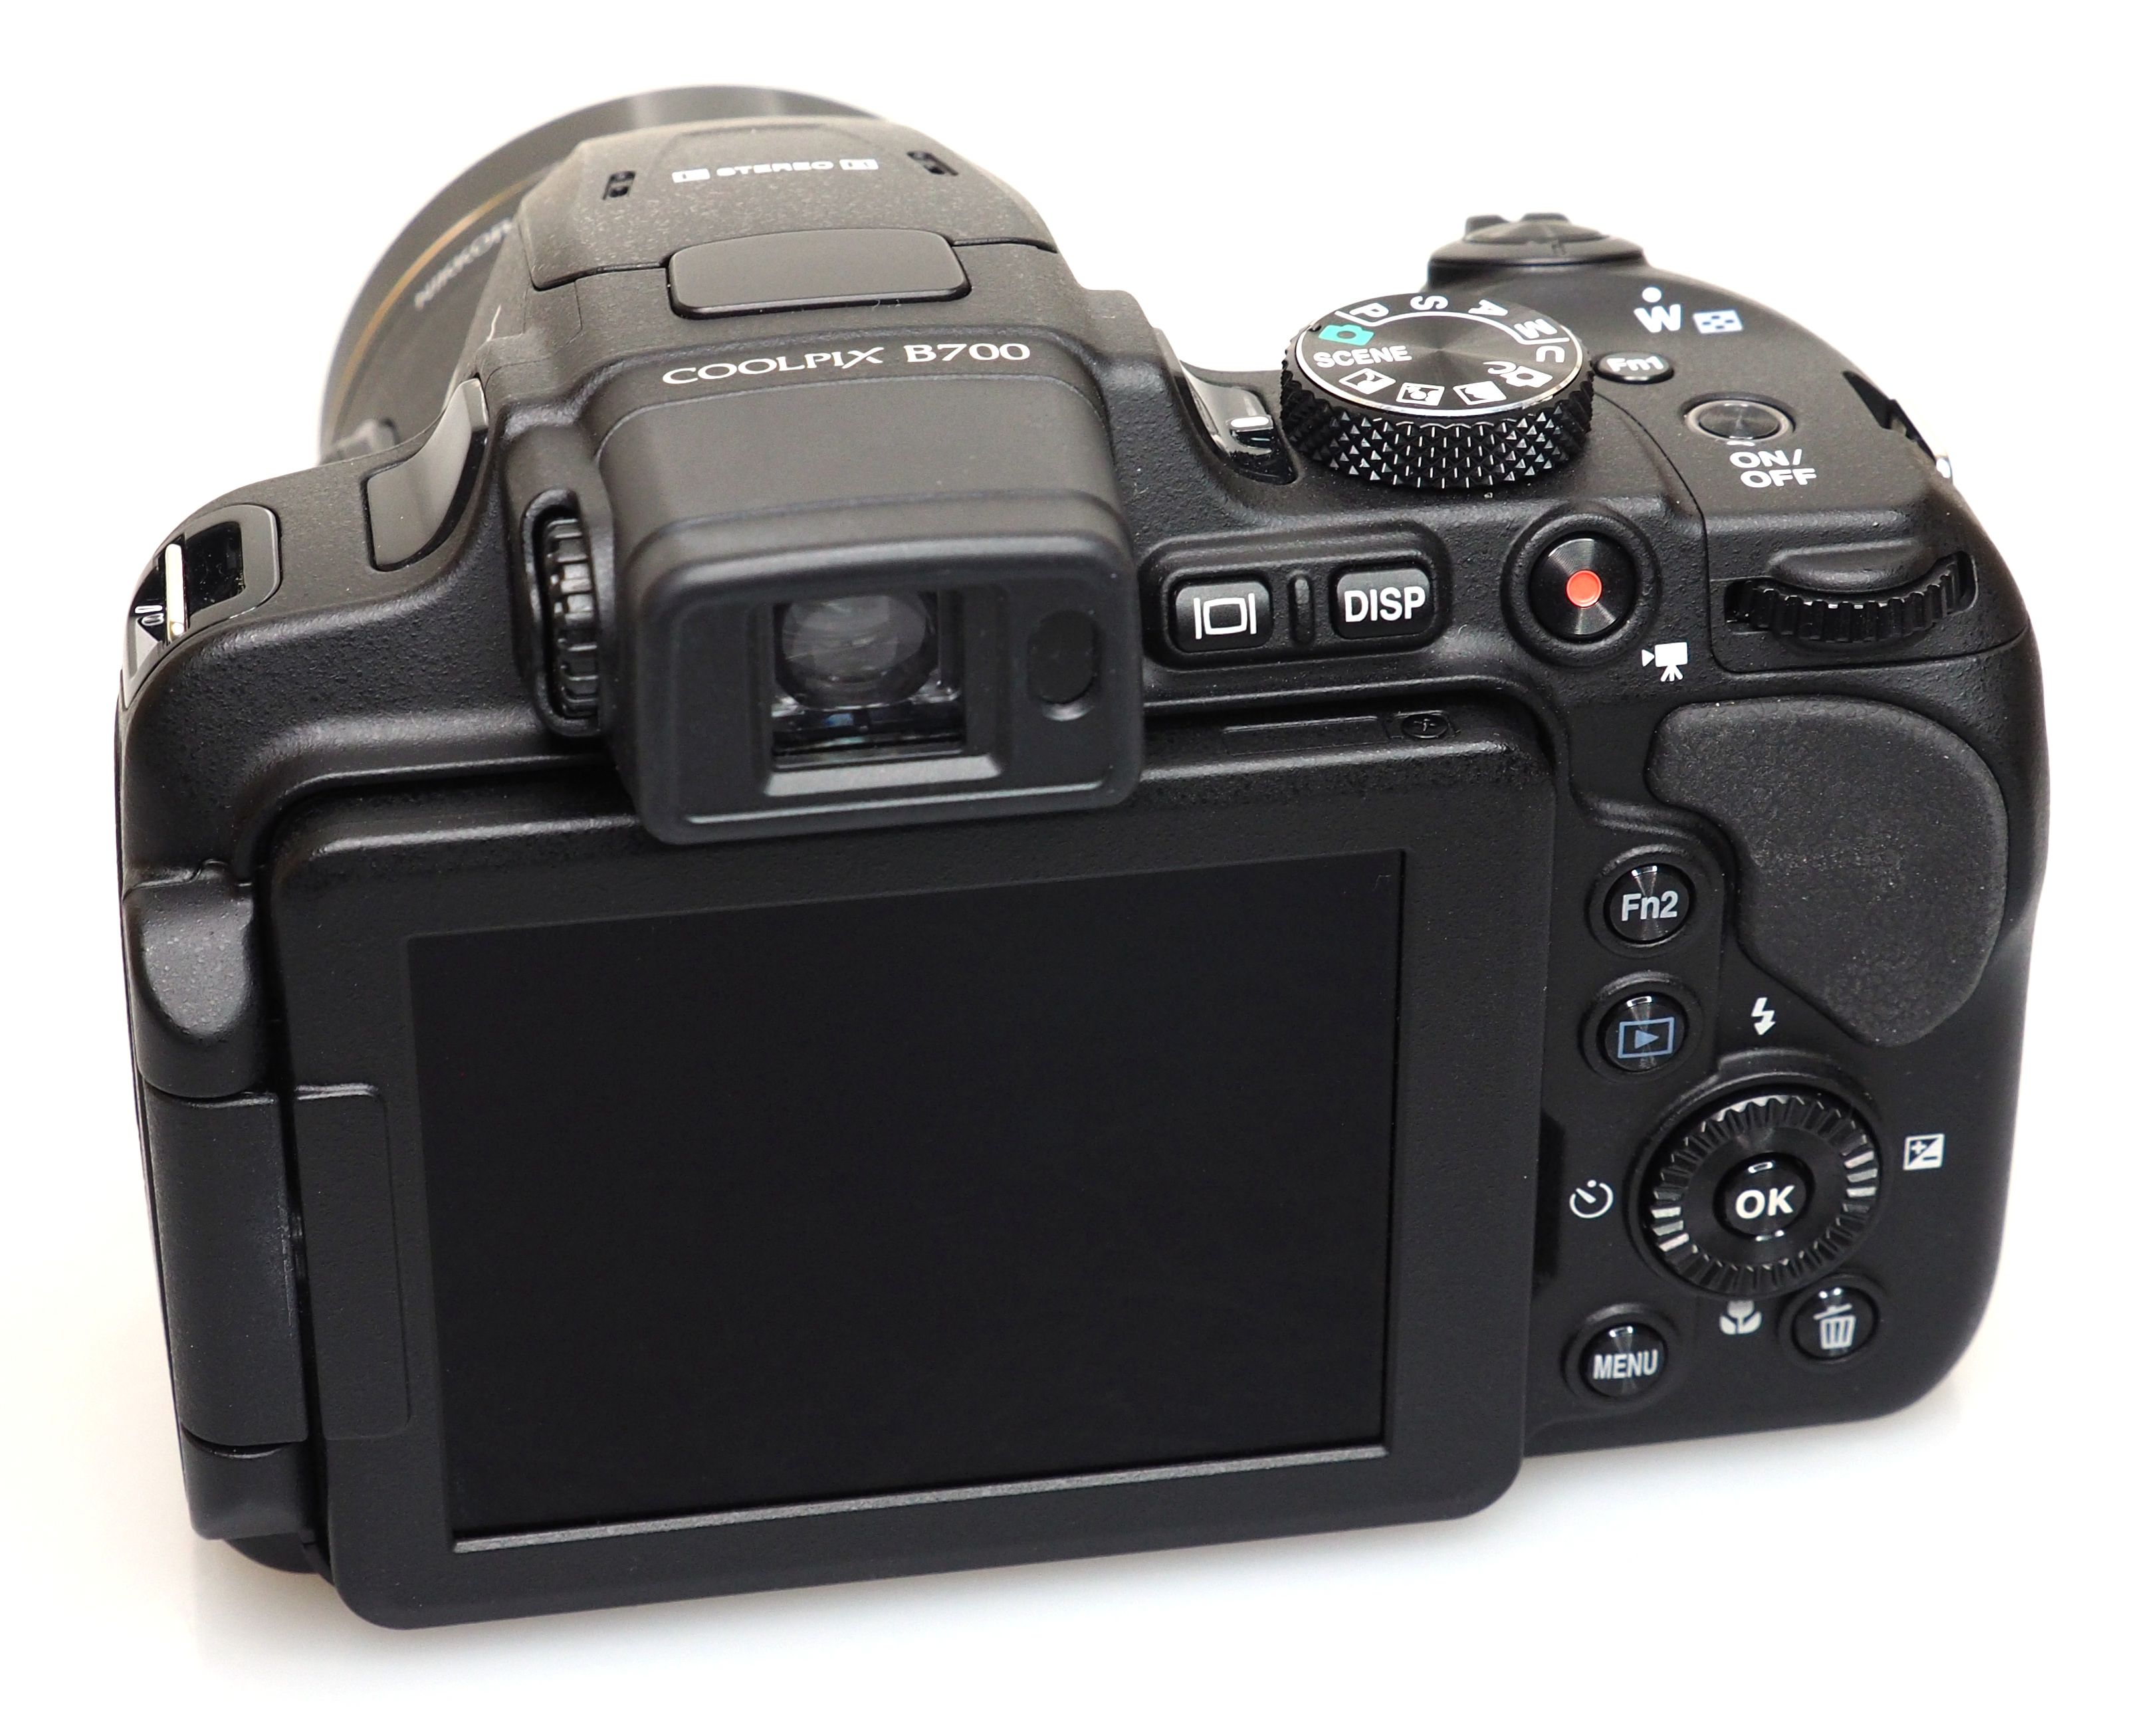 Nikon Coolpix B700 compacta color negro